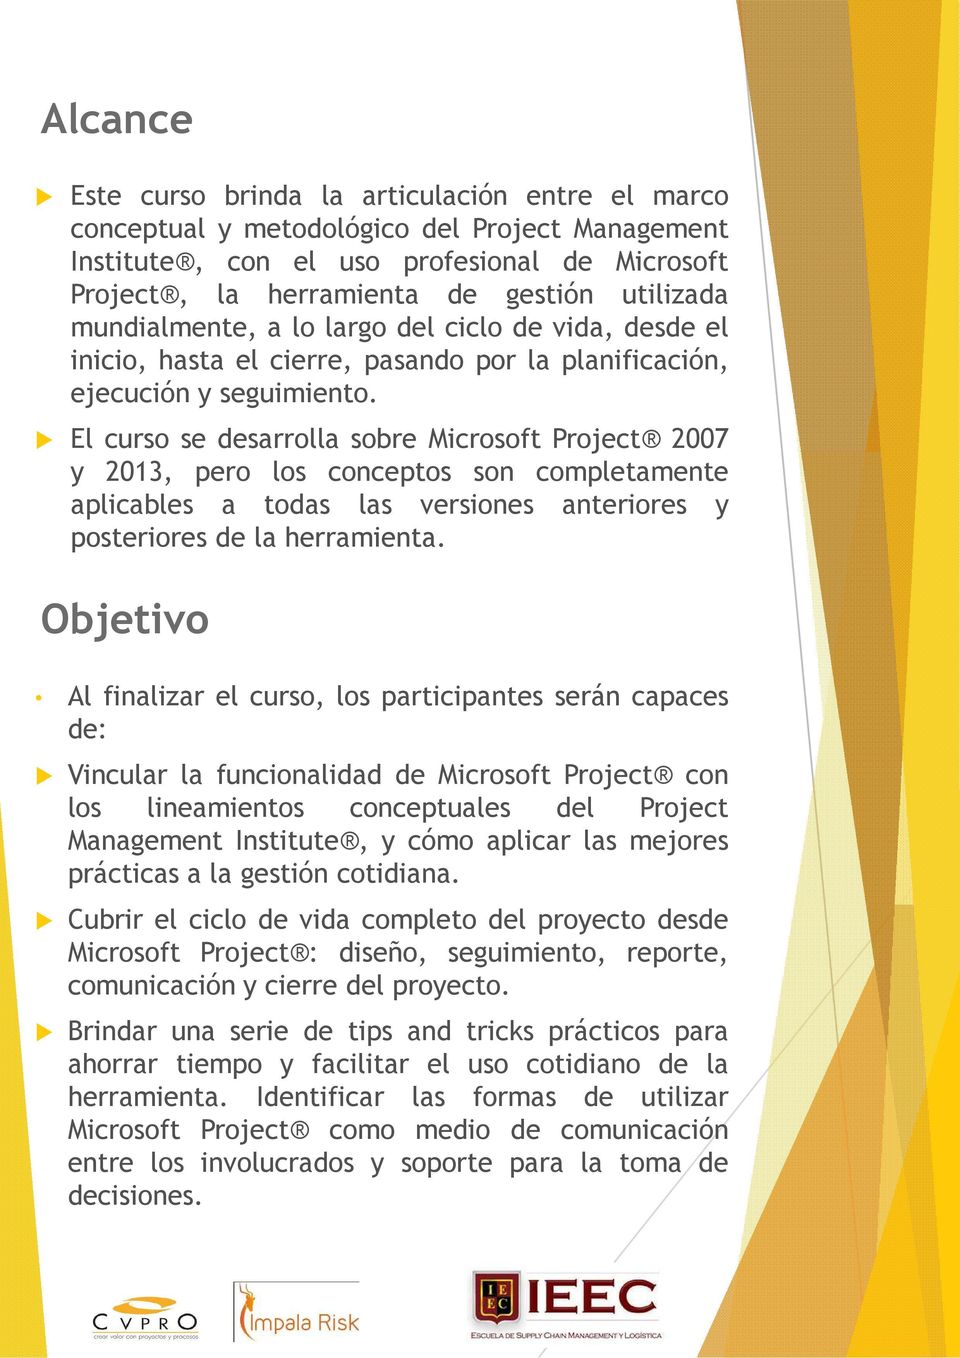 El curso se desarrolla sobre Microsoft Project 2007 y 2013, pero los conceptos son completamente aplicables a todas las versiones anteriores y posteriores de la herramienta.